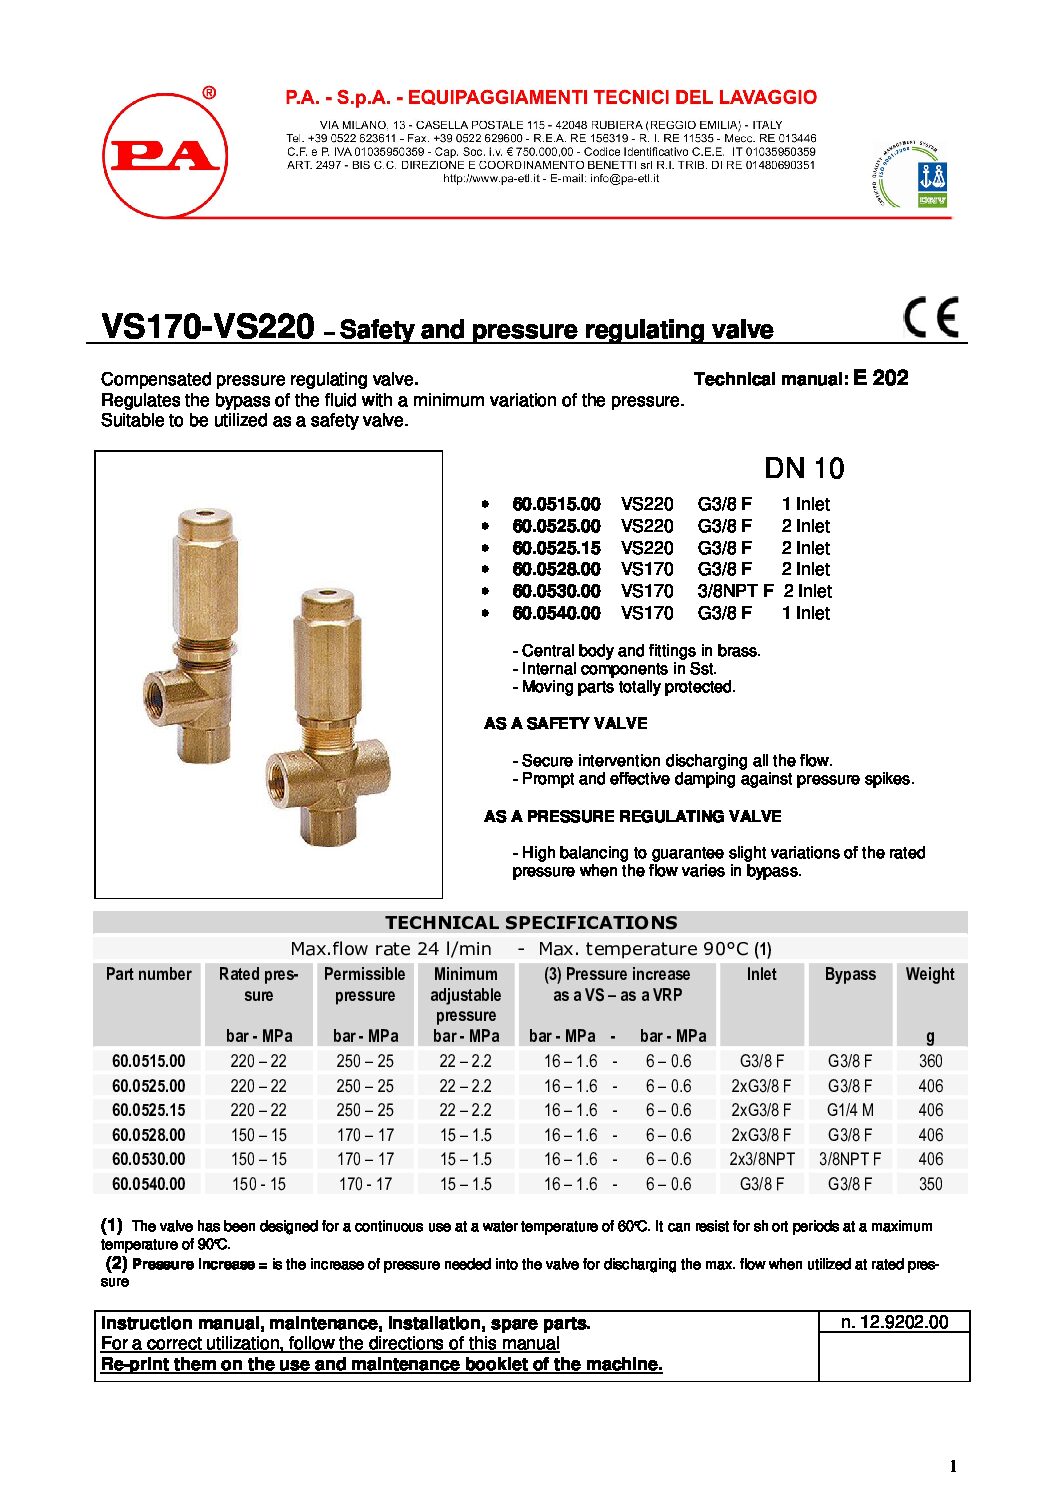 PA VS170 & VS220 safety valve technical manual